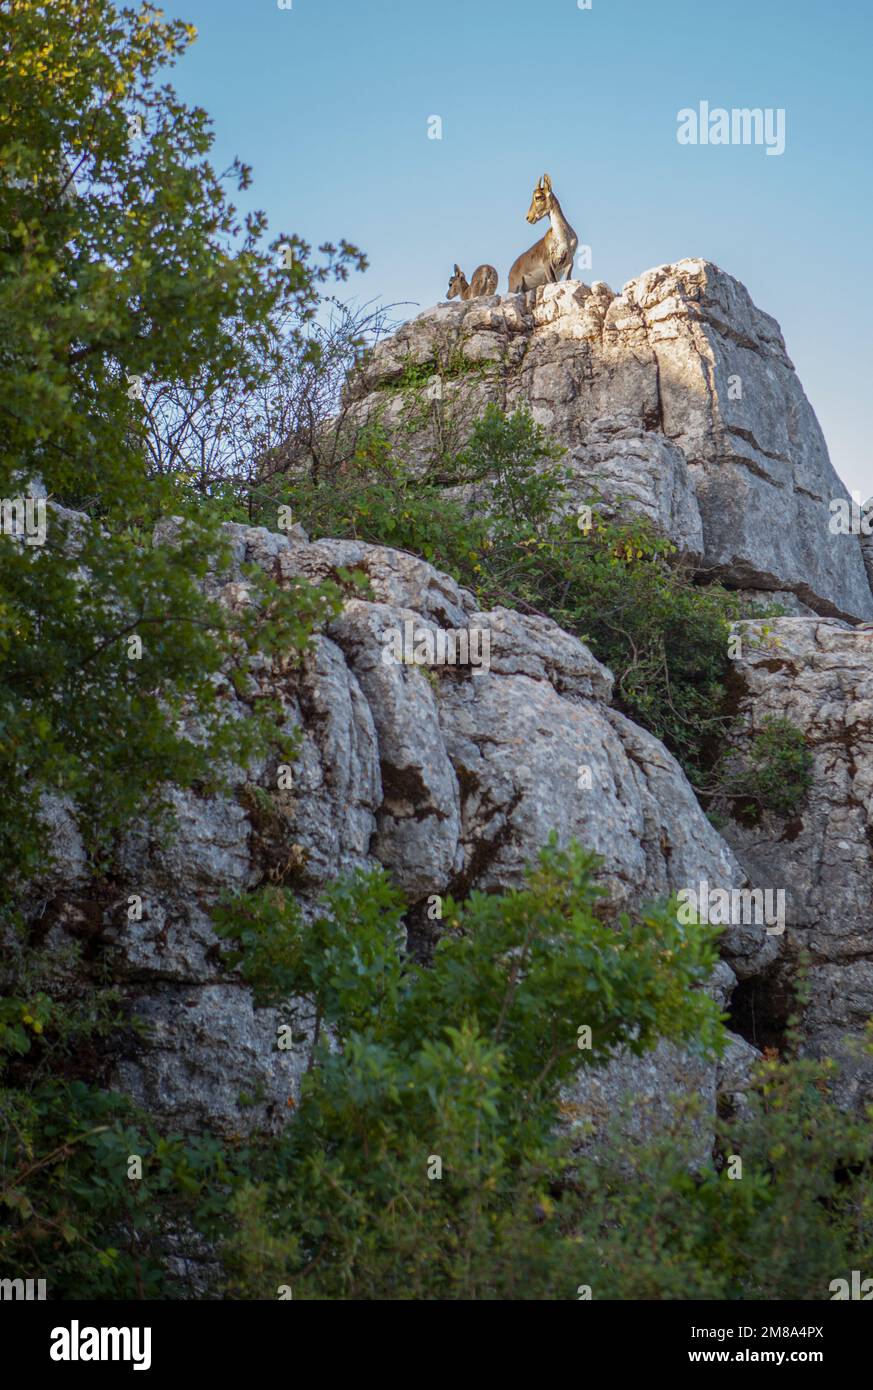 Cabras salvajes en las rocas del Parque Nacional La Sierra del Torcal de Antequera, Málaga, España. Madre e hijo Foto de stock